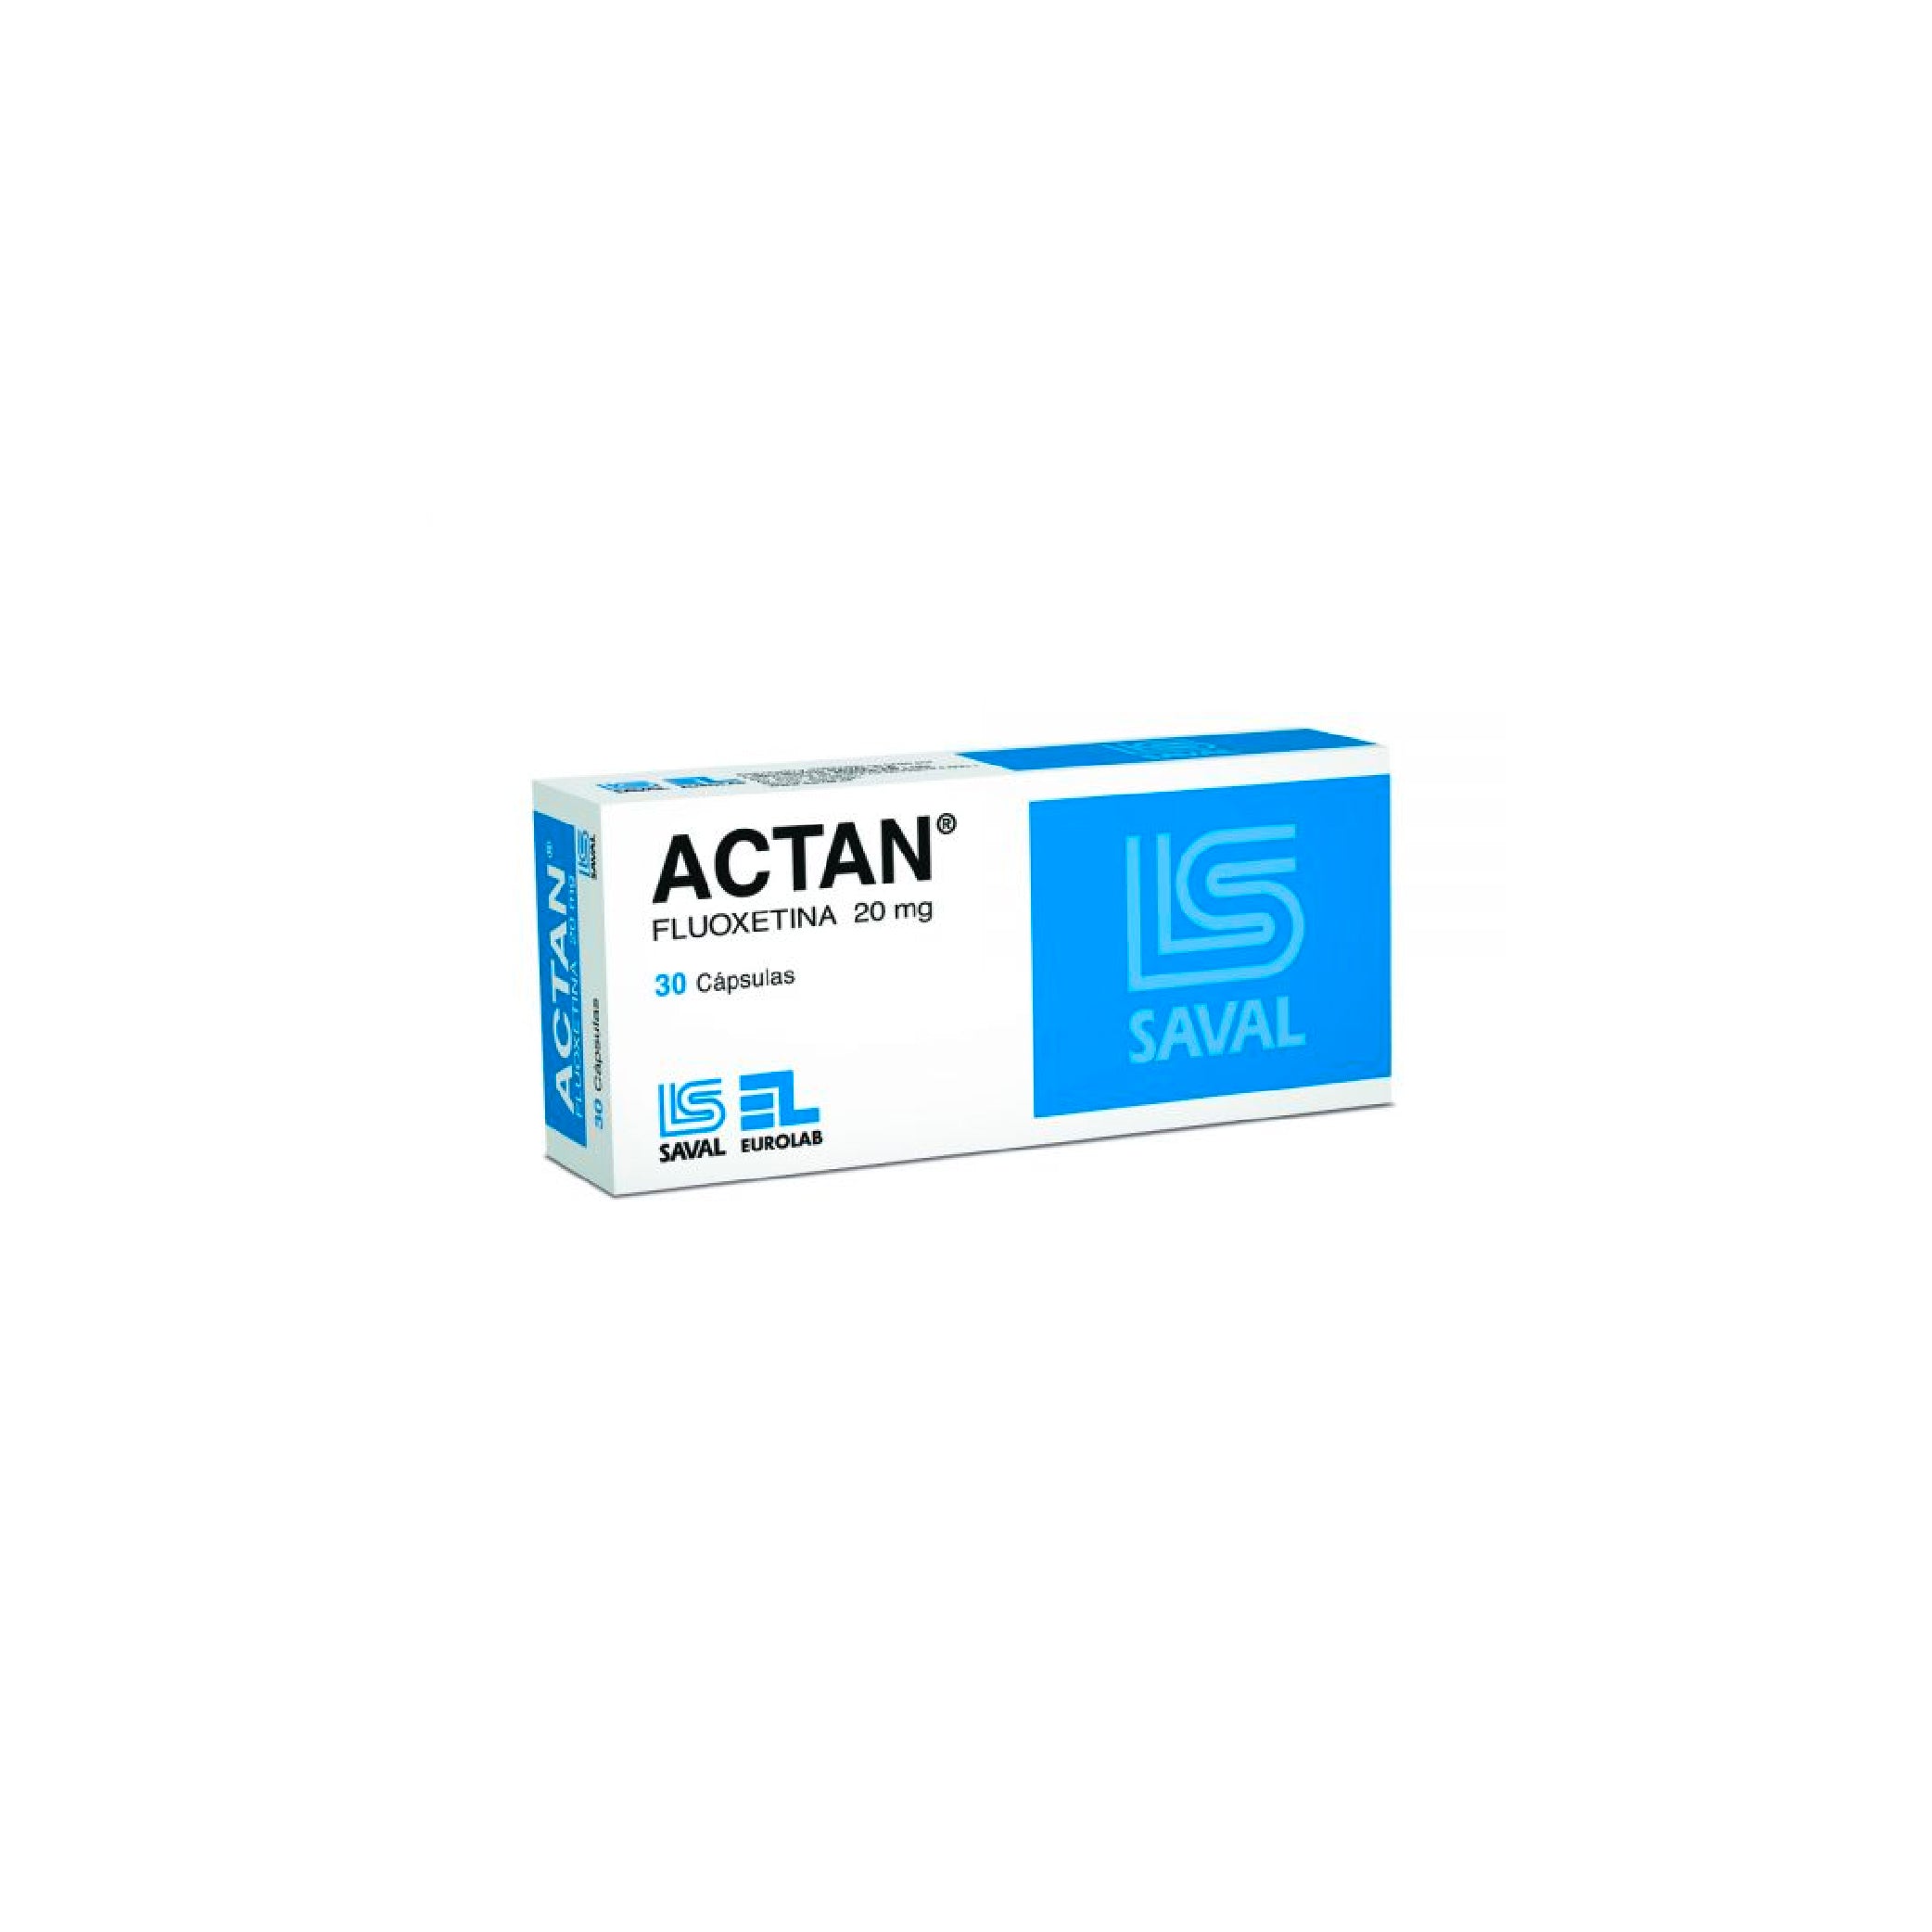 ACTAN 20mg Caps. x 30